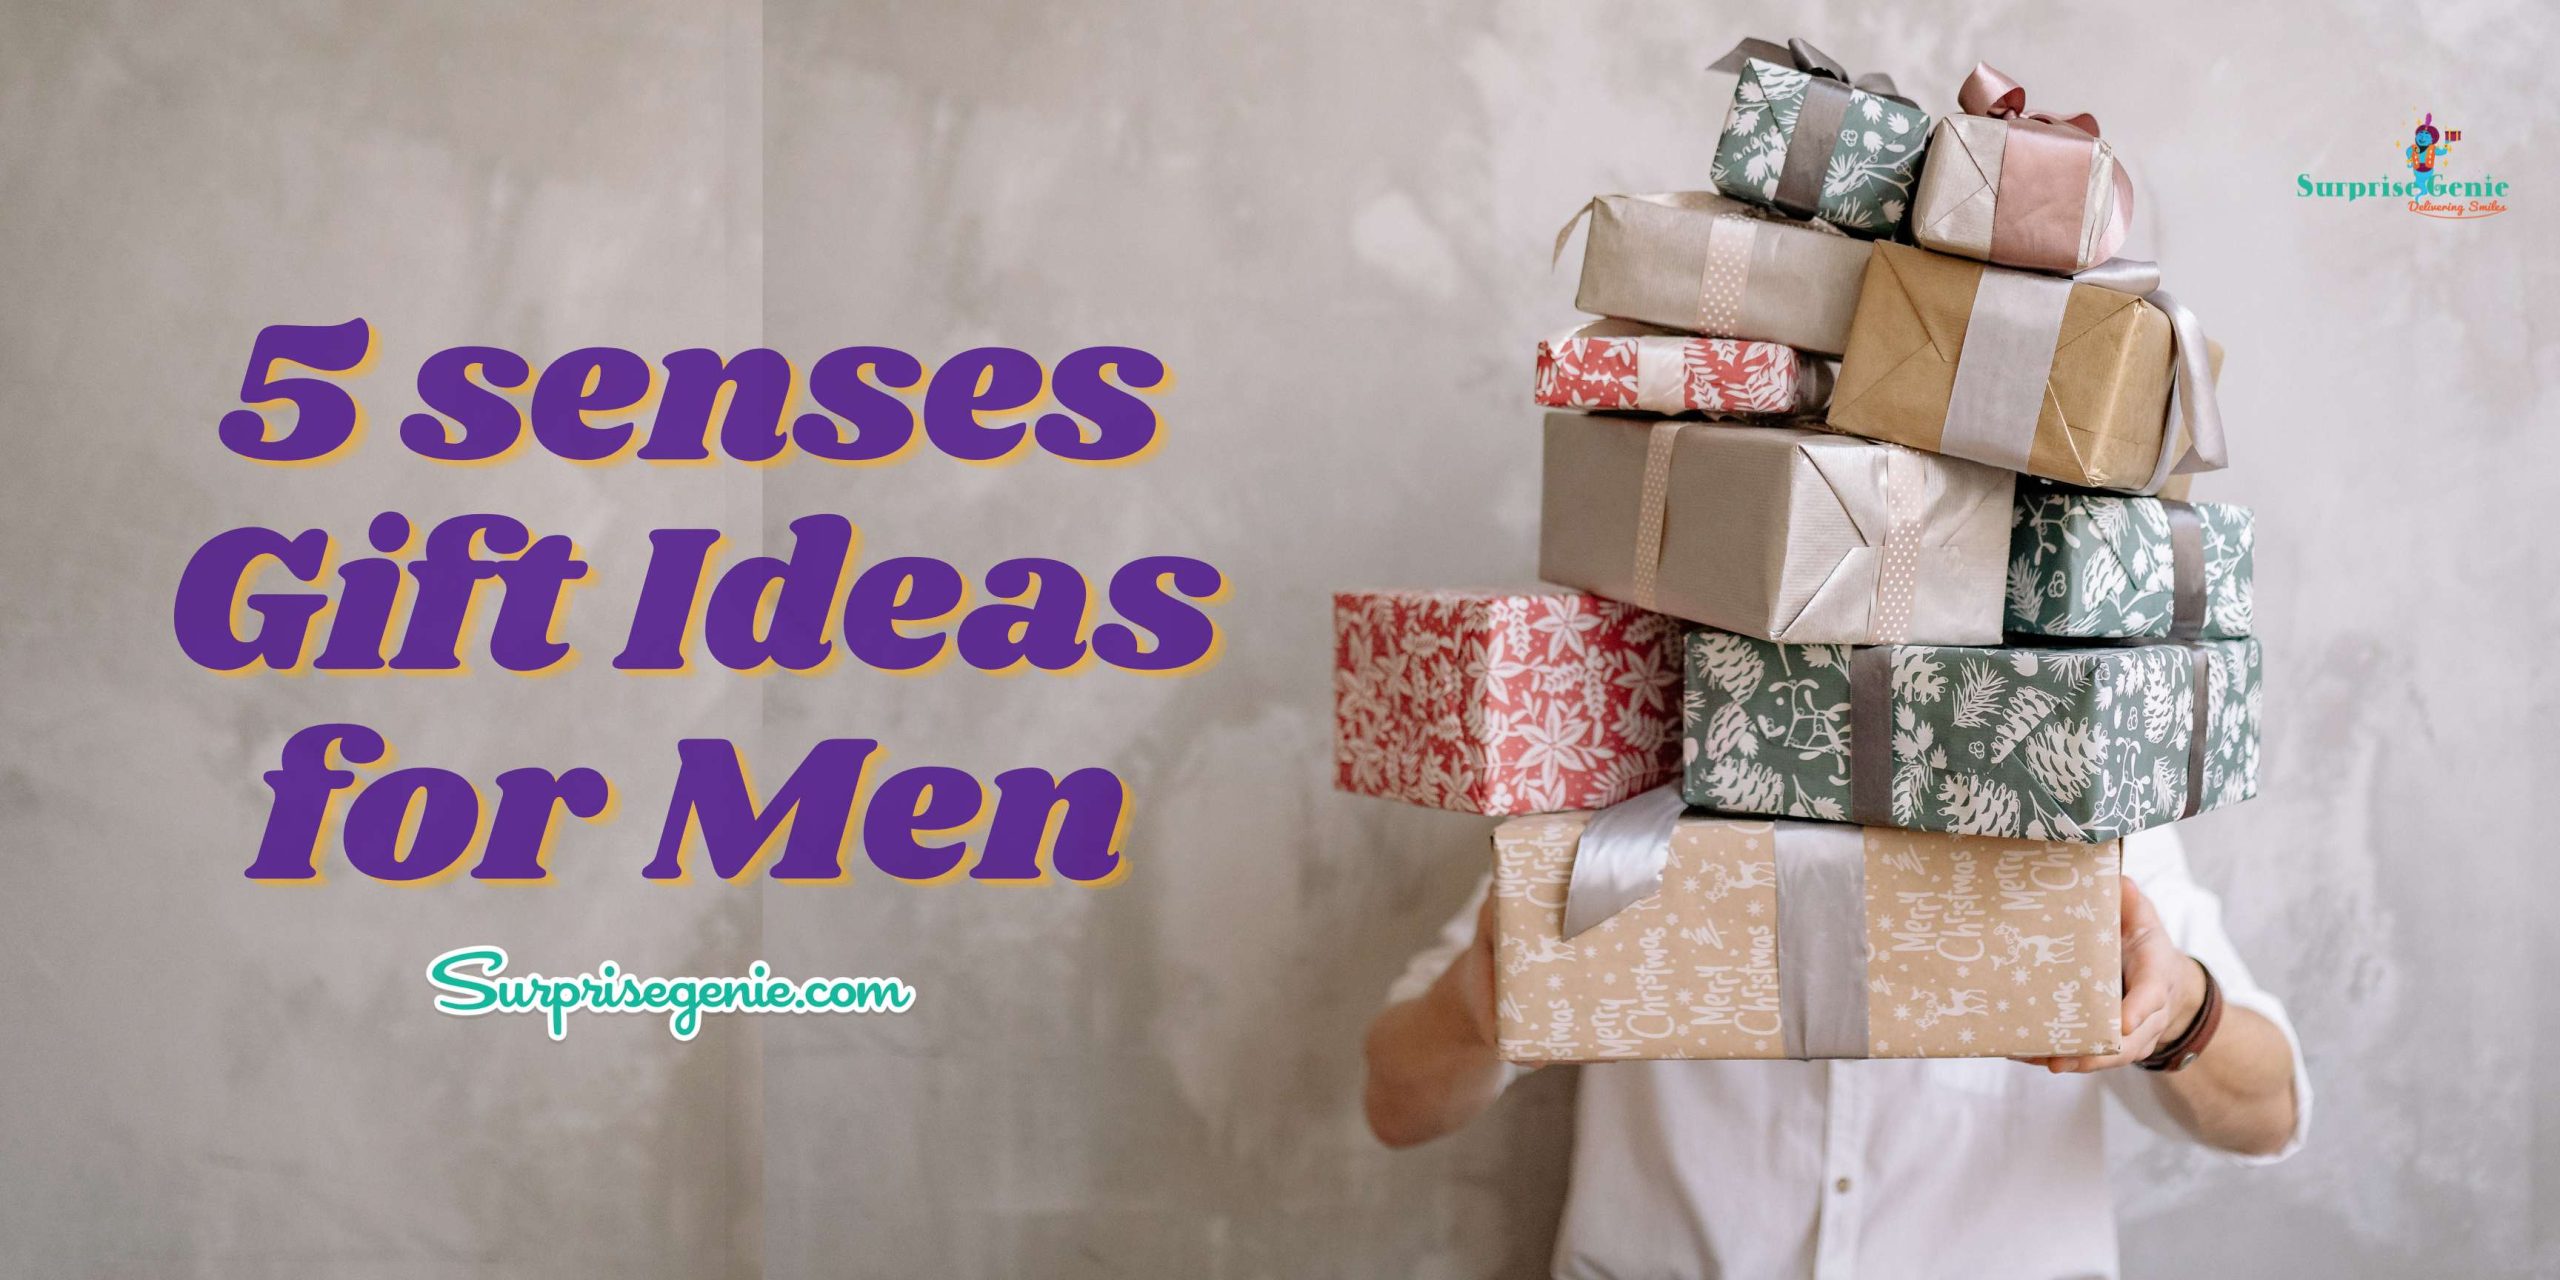 5 senses gift ideas for him